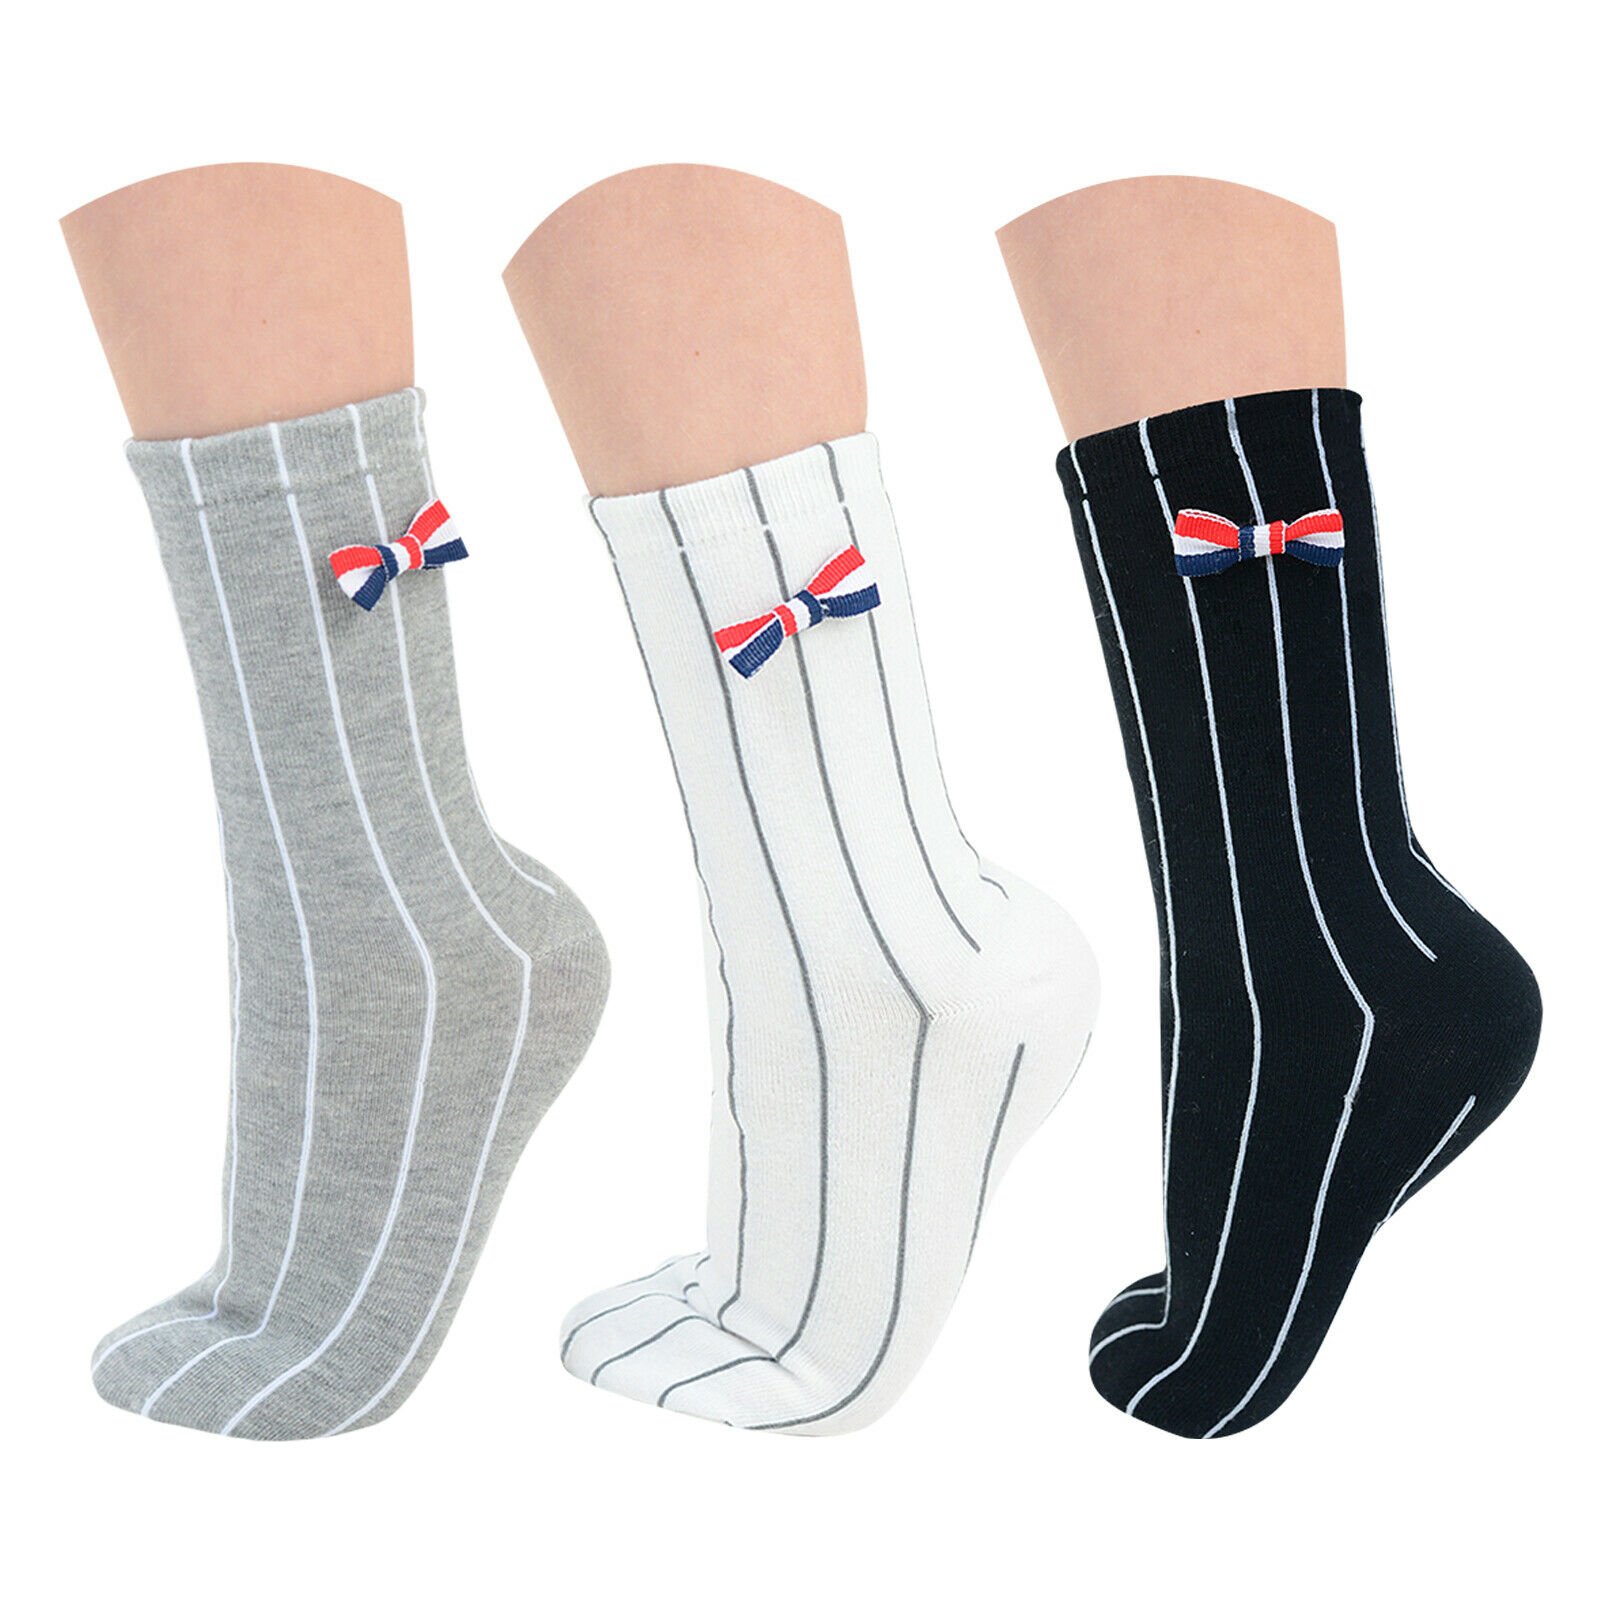 16 Dozens of New Unisex Kids Vertical Stripes Ankle Bow Socks for Resale Joblot